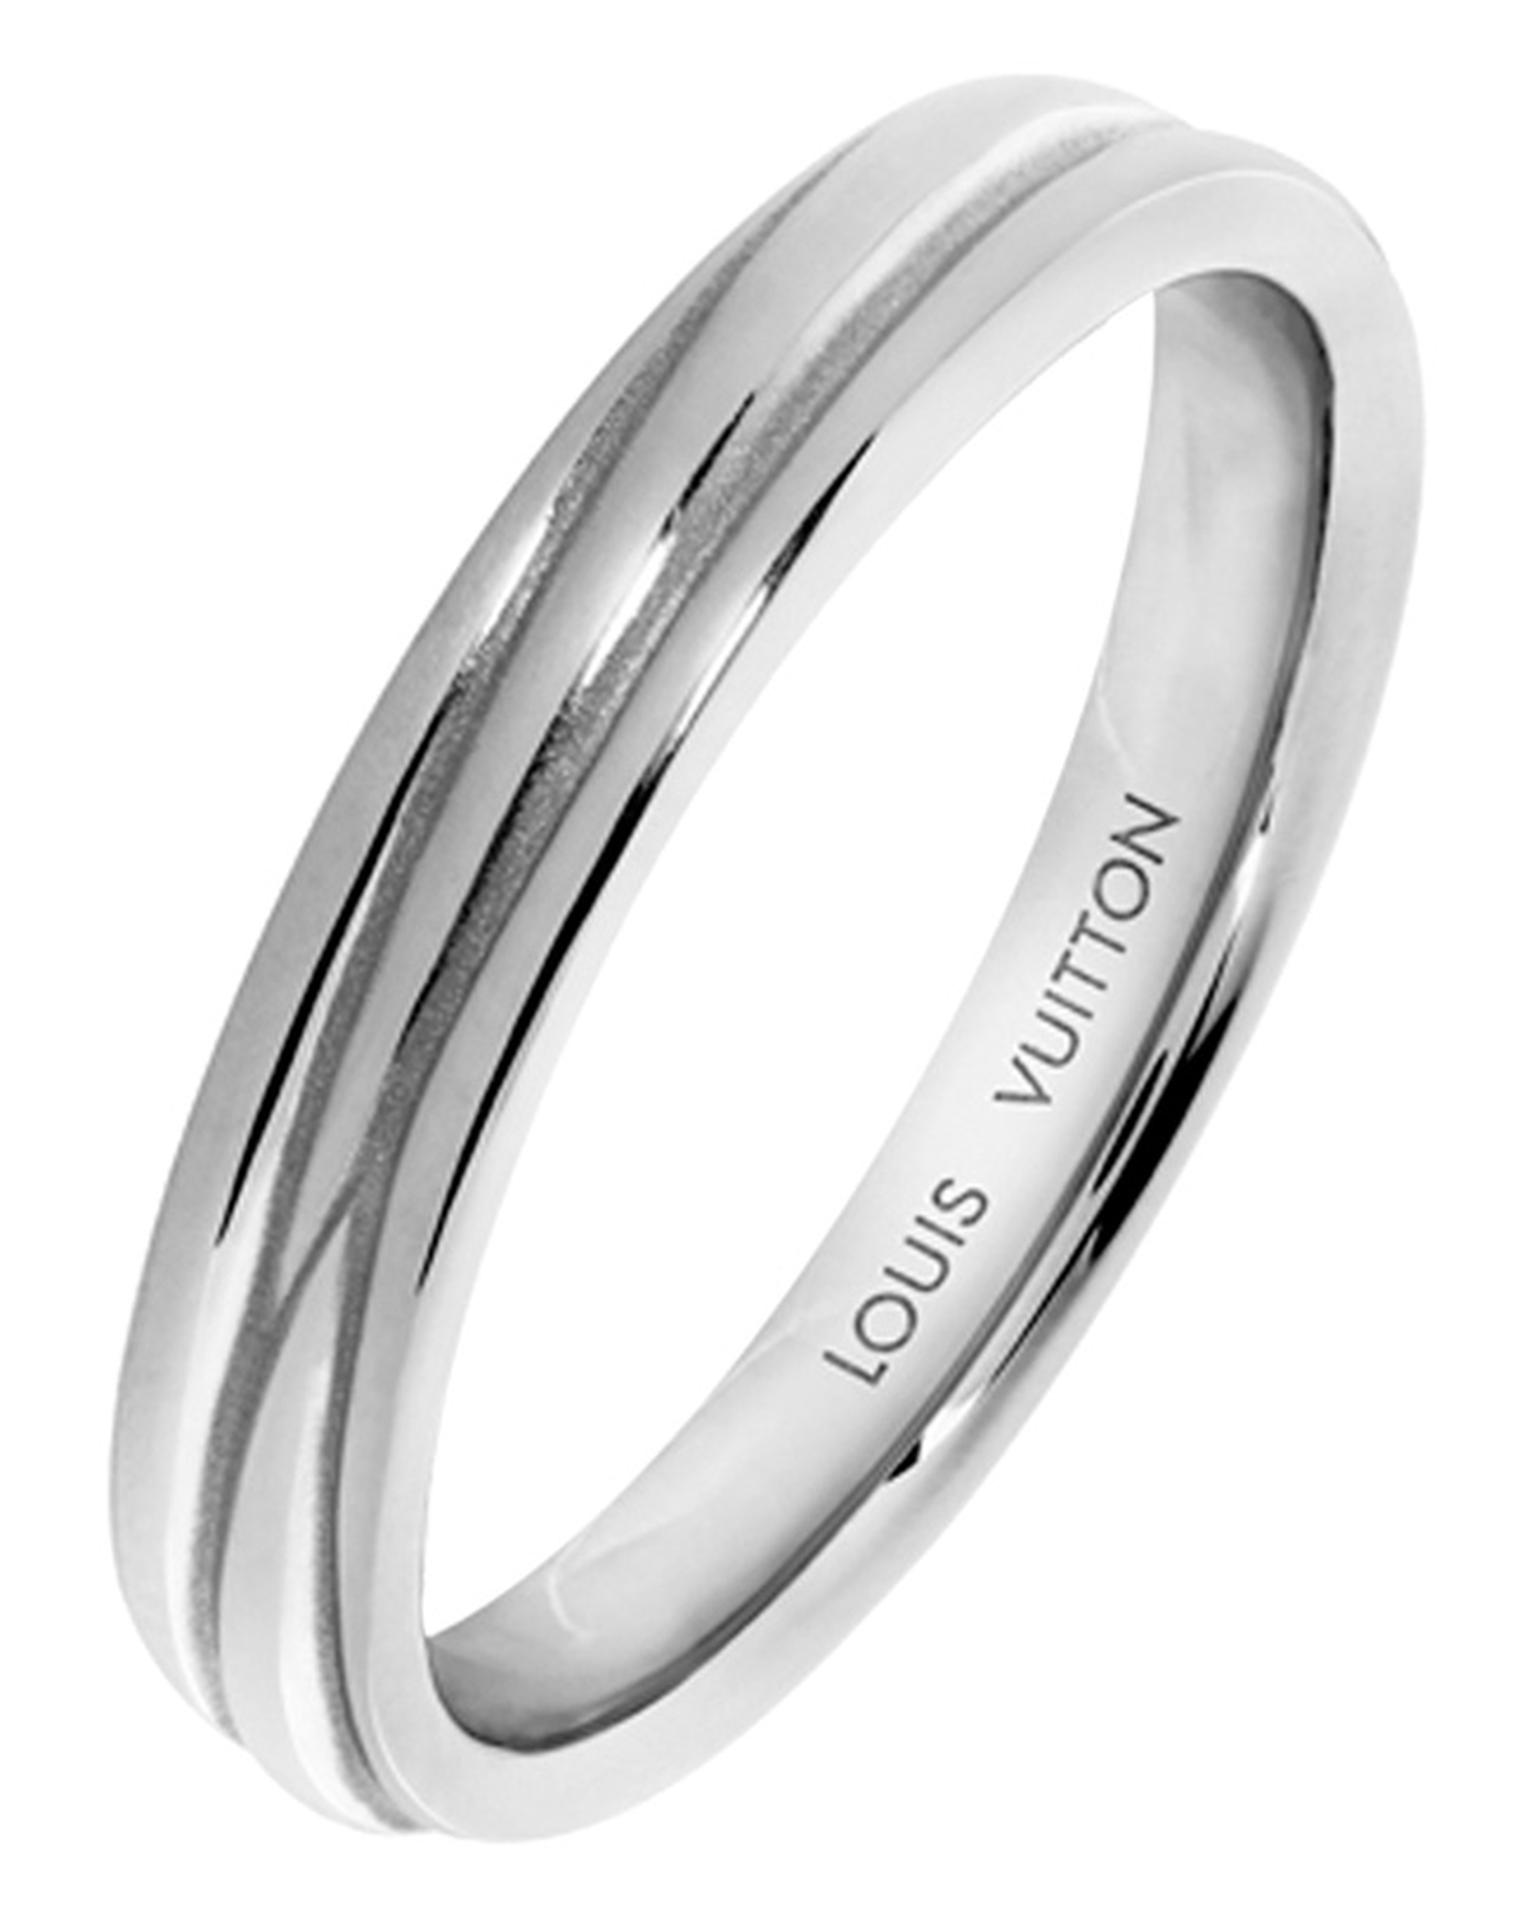 Louis Vuitton Epi Ring in white gold_20131014_Main